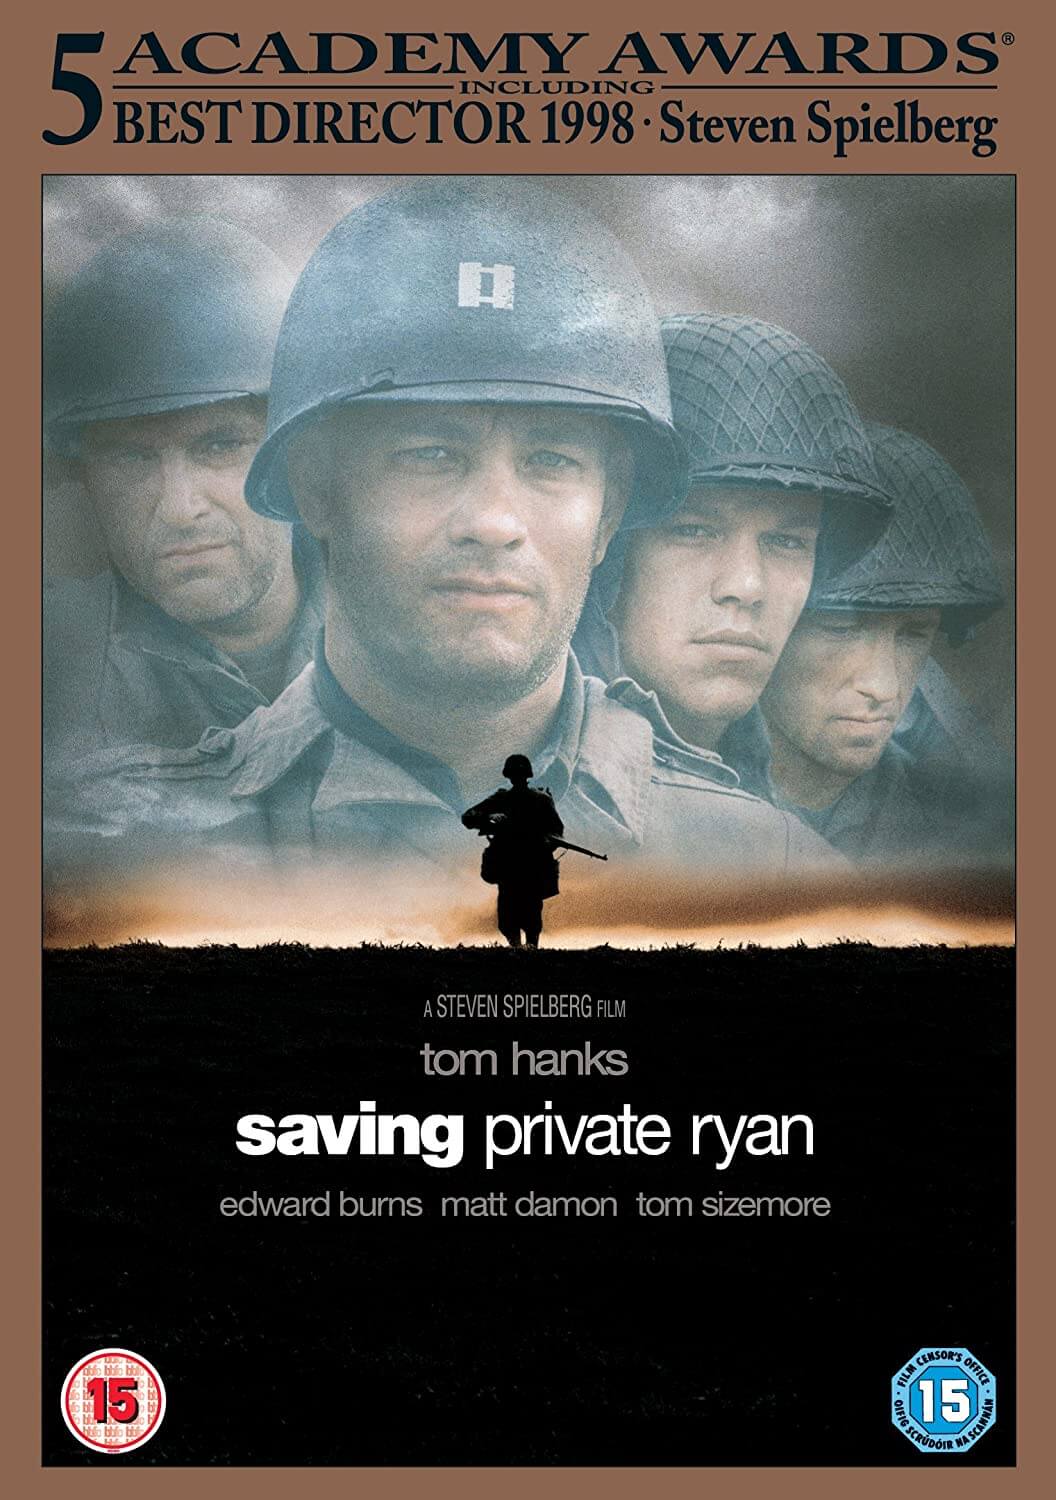 "Saving Private Ryan"